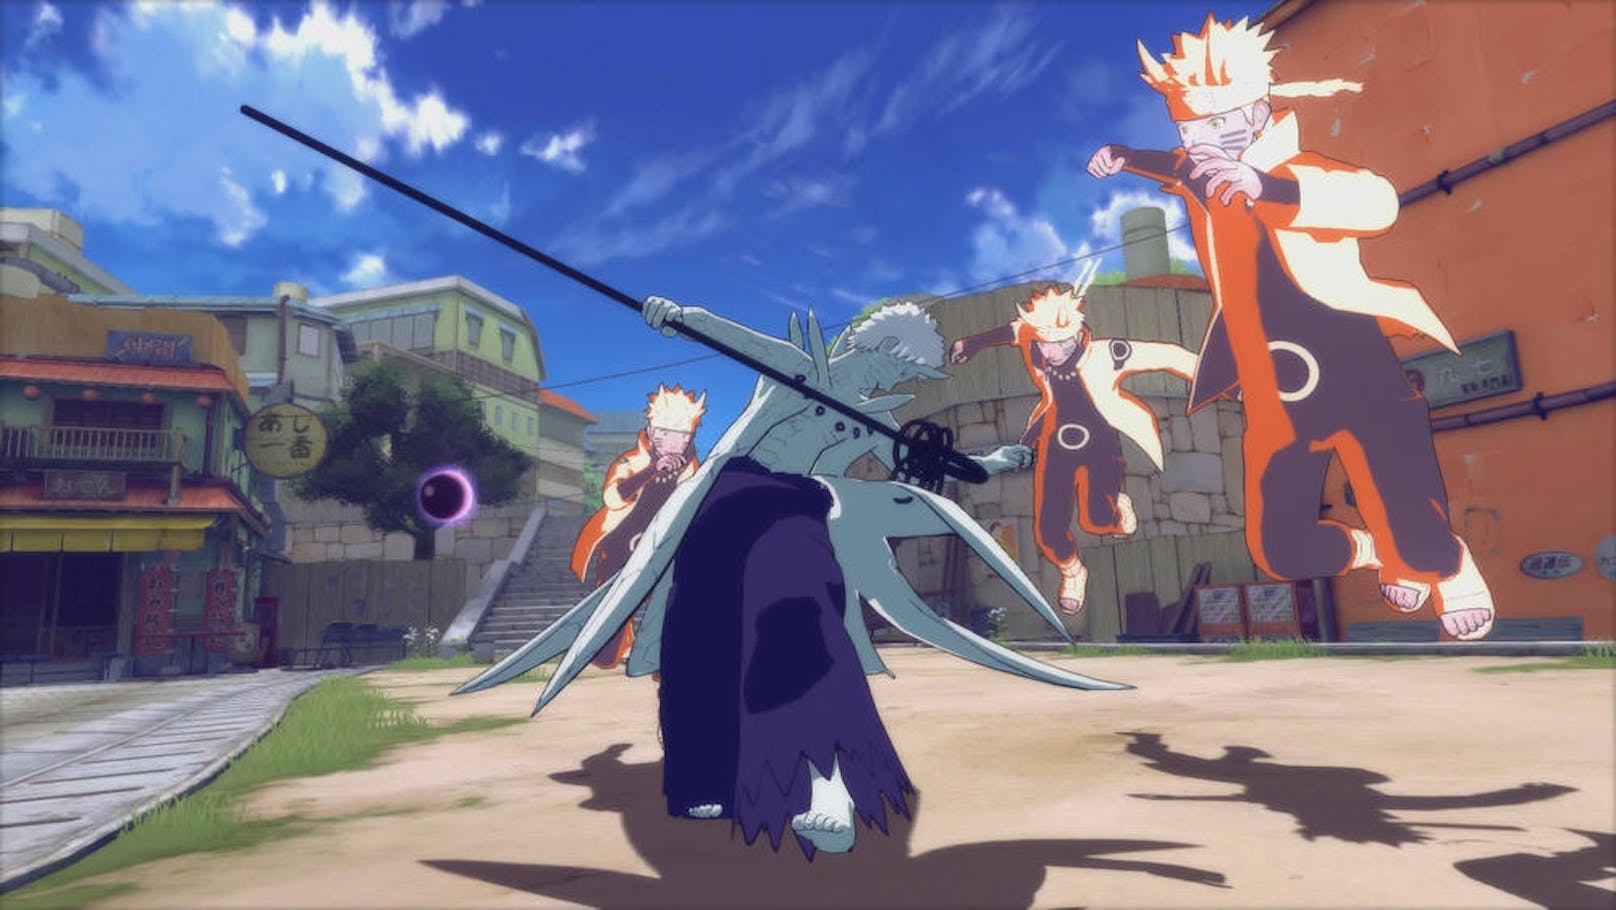 Aber zurück zu Ultimate Ninja Storm 4, dass unglaublich viele, lange Zwischensequenzen bietet, die Naruto-Kenner jubeln lassen werden. Während der Spielszenen, die aus mehreren linearen Story-Strängen bestehen, folgt man den bekannten Figuren wie Naruto, Sasuke und Sakura, wobei das Gameplay aus spektakulären und effektgeladenen 3D-Kämpfen besteht.